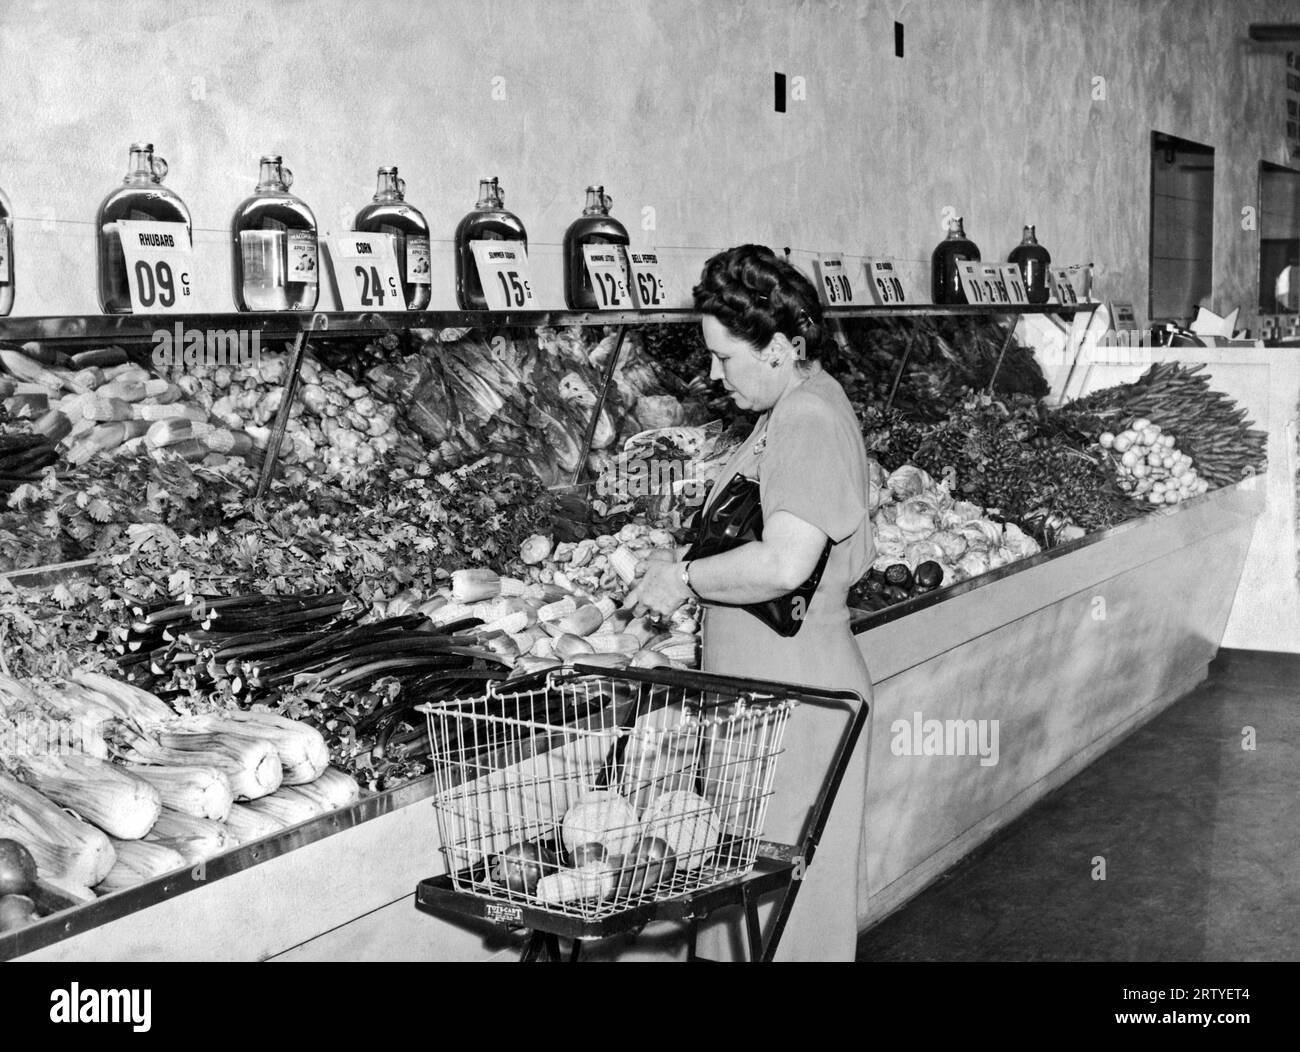 Vereinigte Staaten um 1940. Eine Frau in einem Lebensmittelgeschäft, die eine Auswahl aus der Gemüseabteilung macht. Sie verwendet einen frühen Warenkorb, der den separaten Korb trägt und zusammenklappt, wenn er nicht verwendet wird. Stockfoto